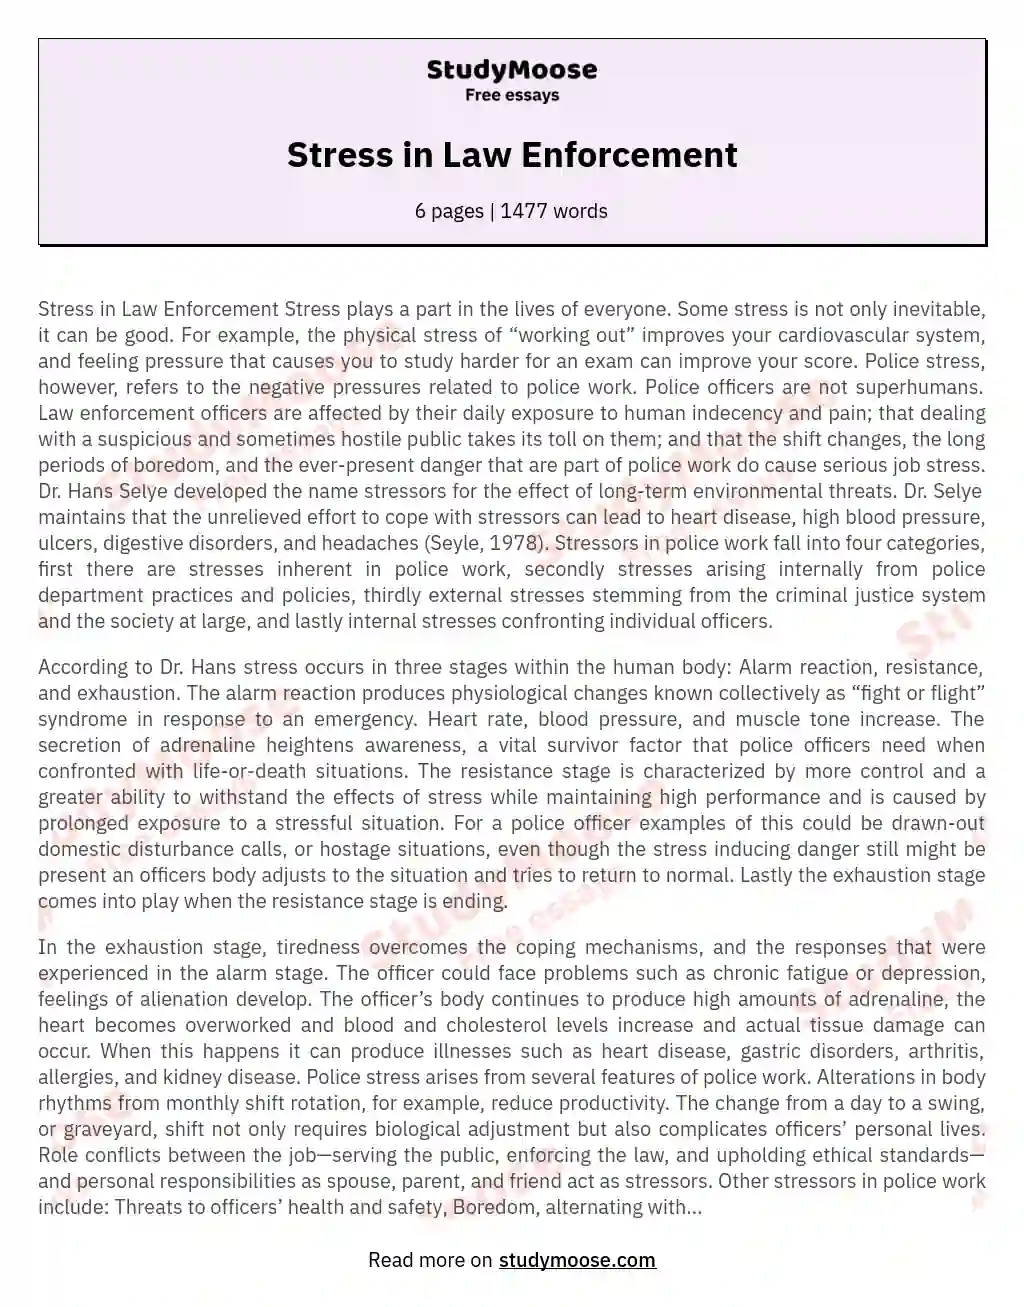 Stress in Law Enforcement